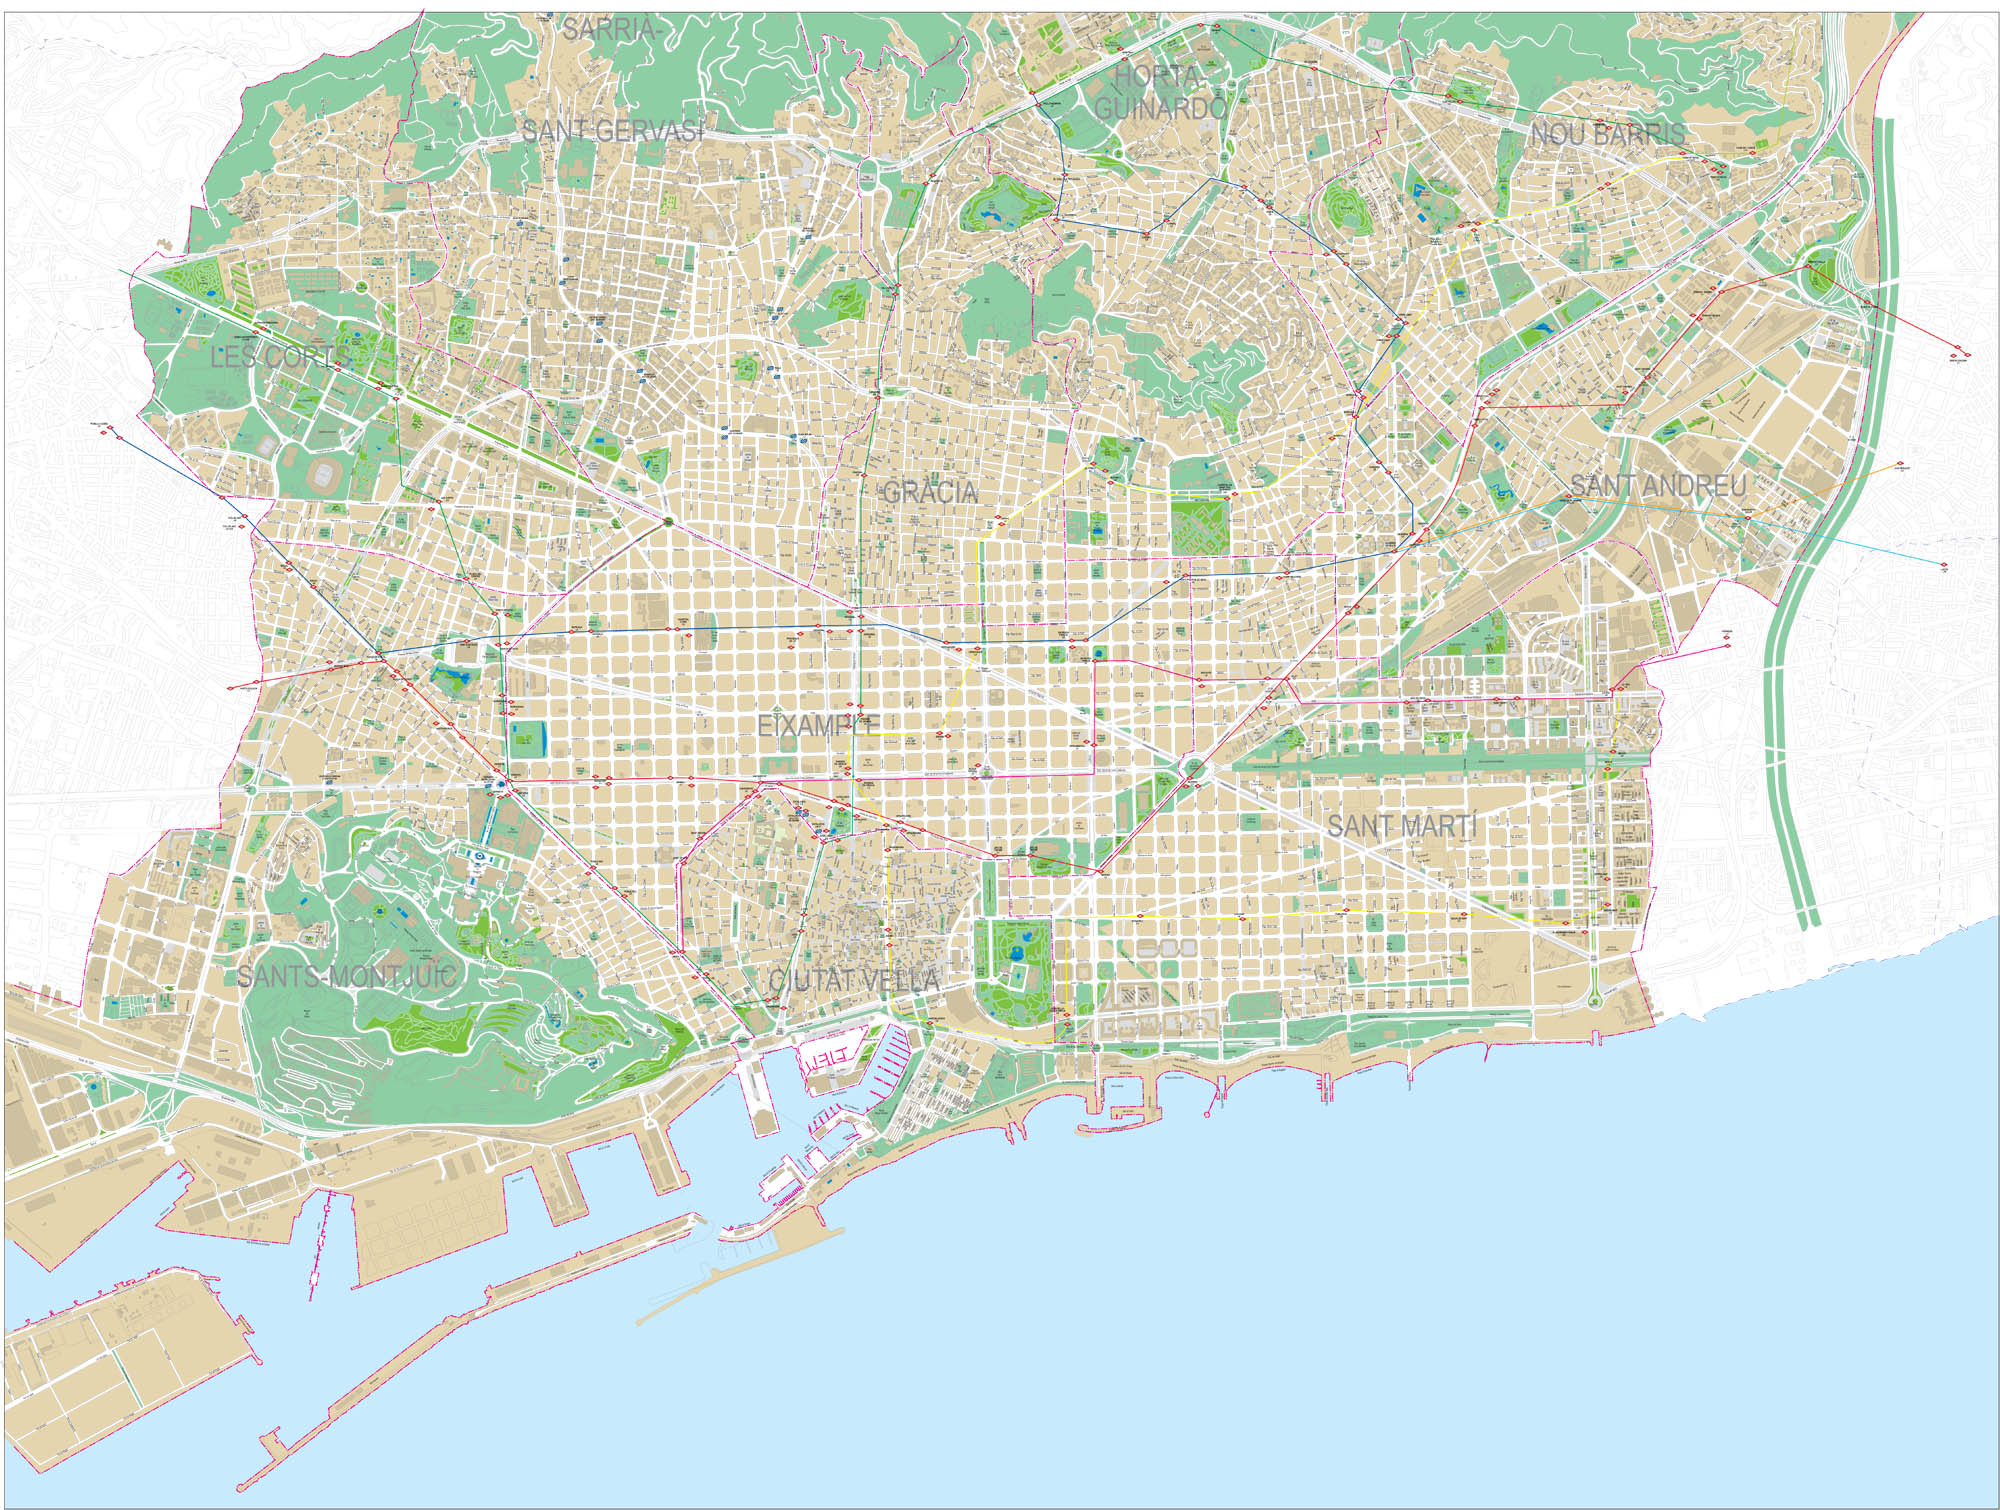 Barcelona - Plano detallado de la ciudad